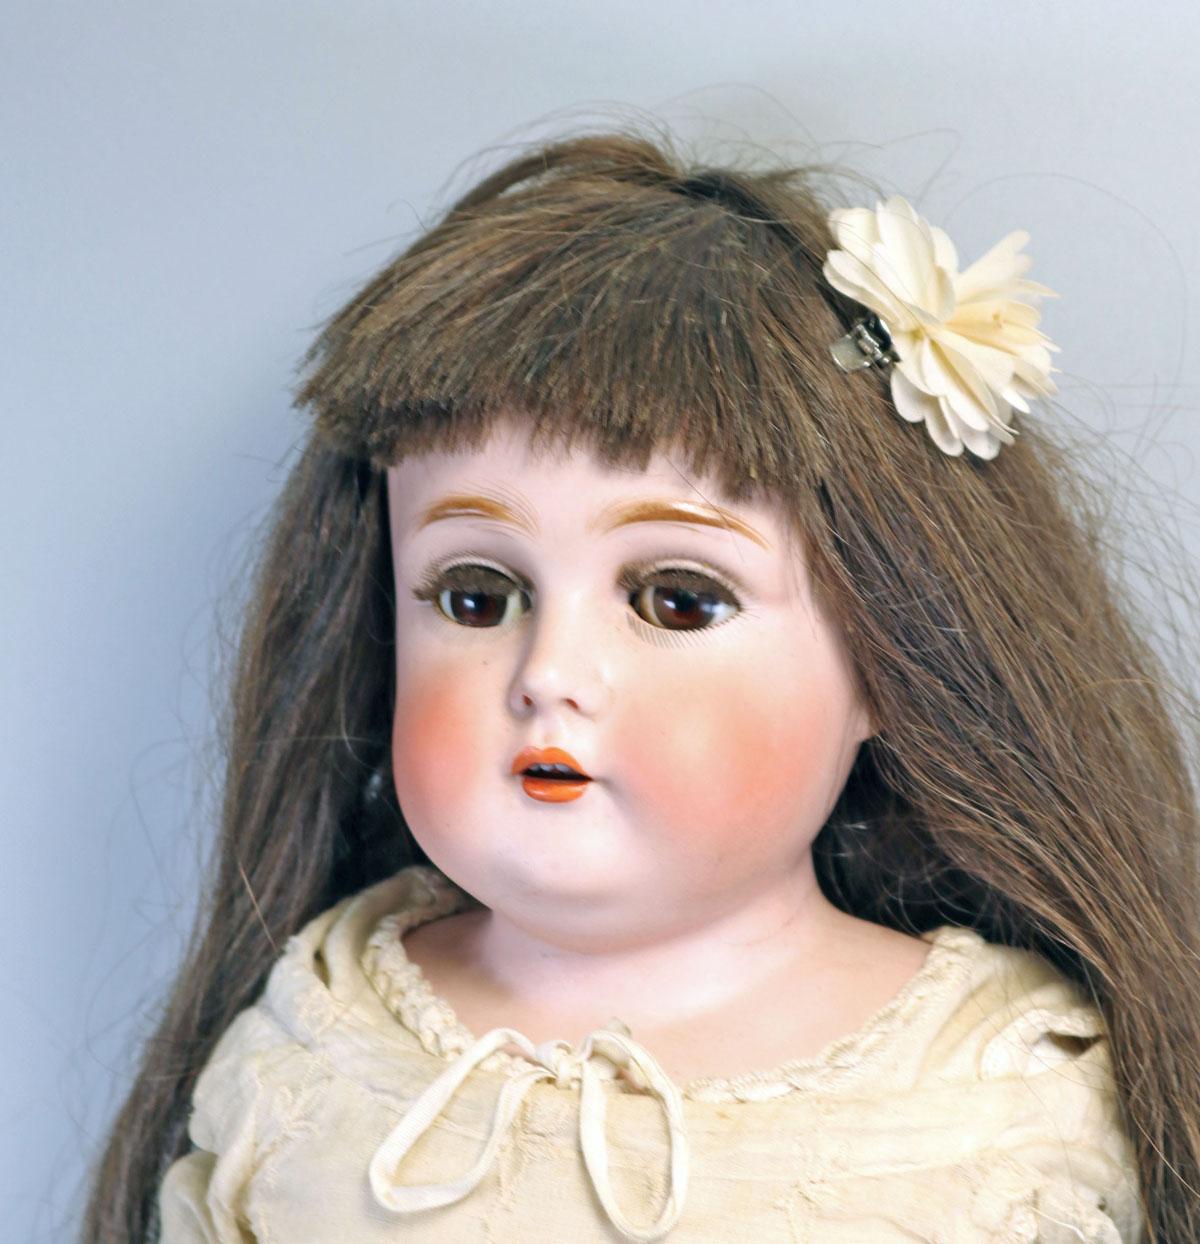 Large Antique Kestner Bisque Doll, Germany, 25"